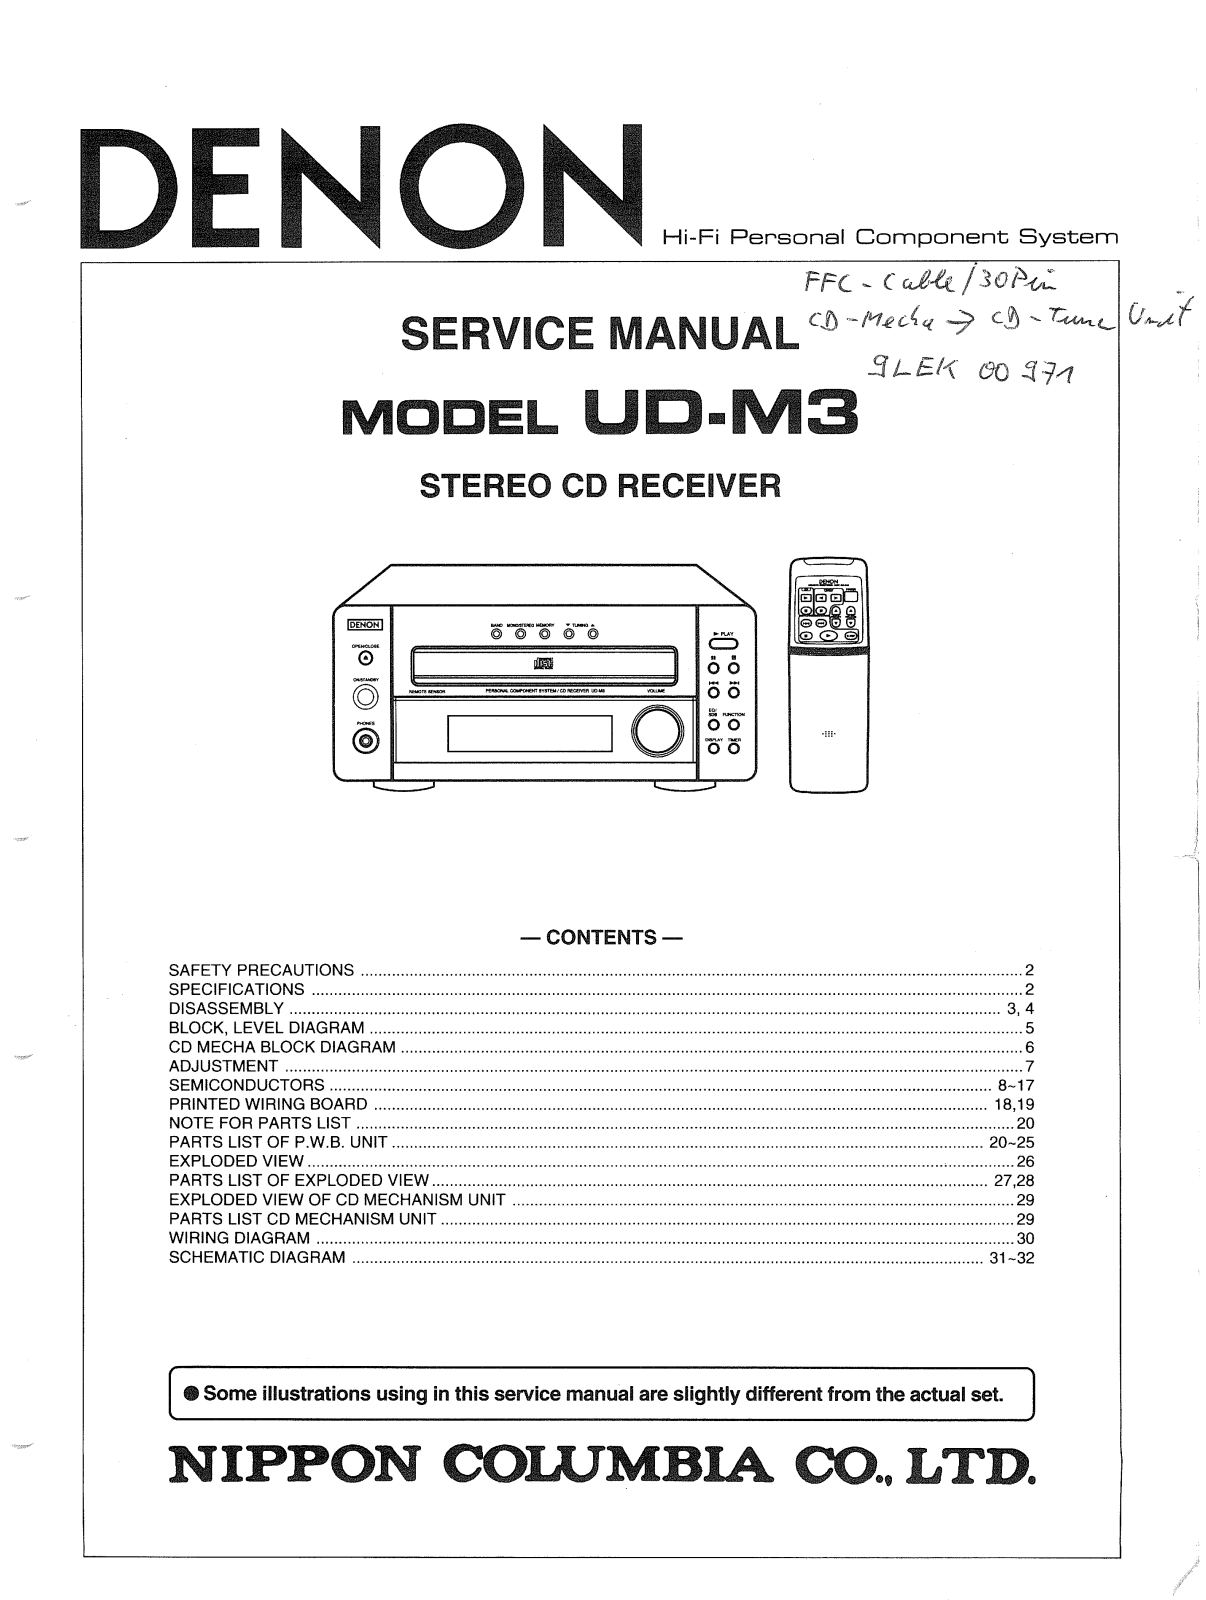 Denon UD-M3 Service Manual